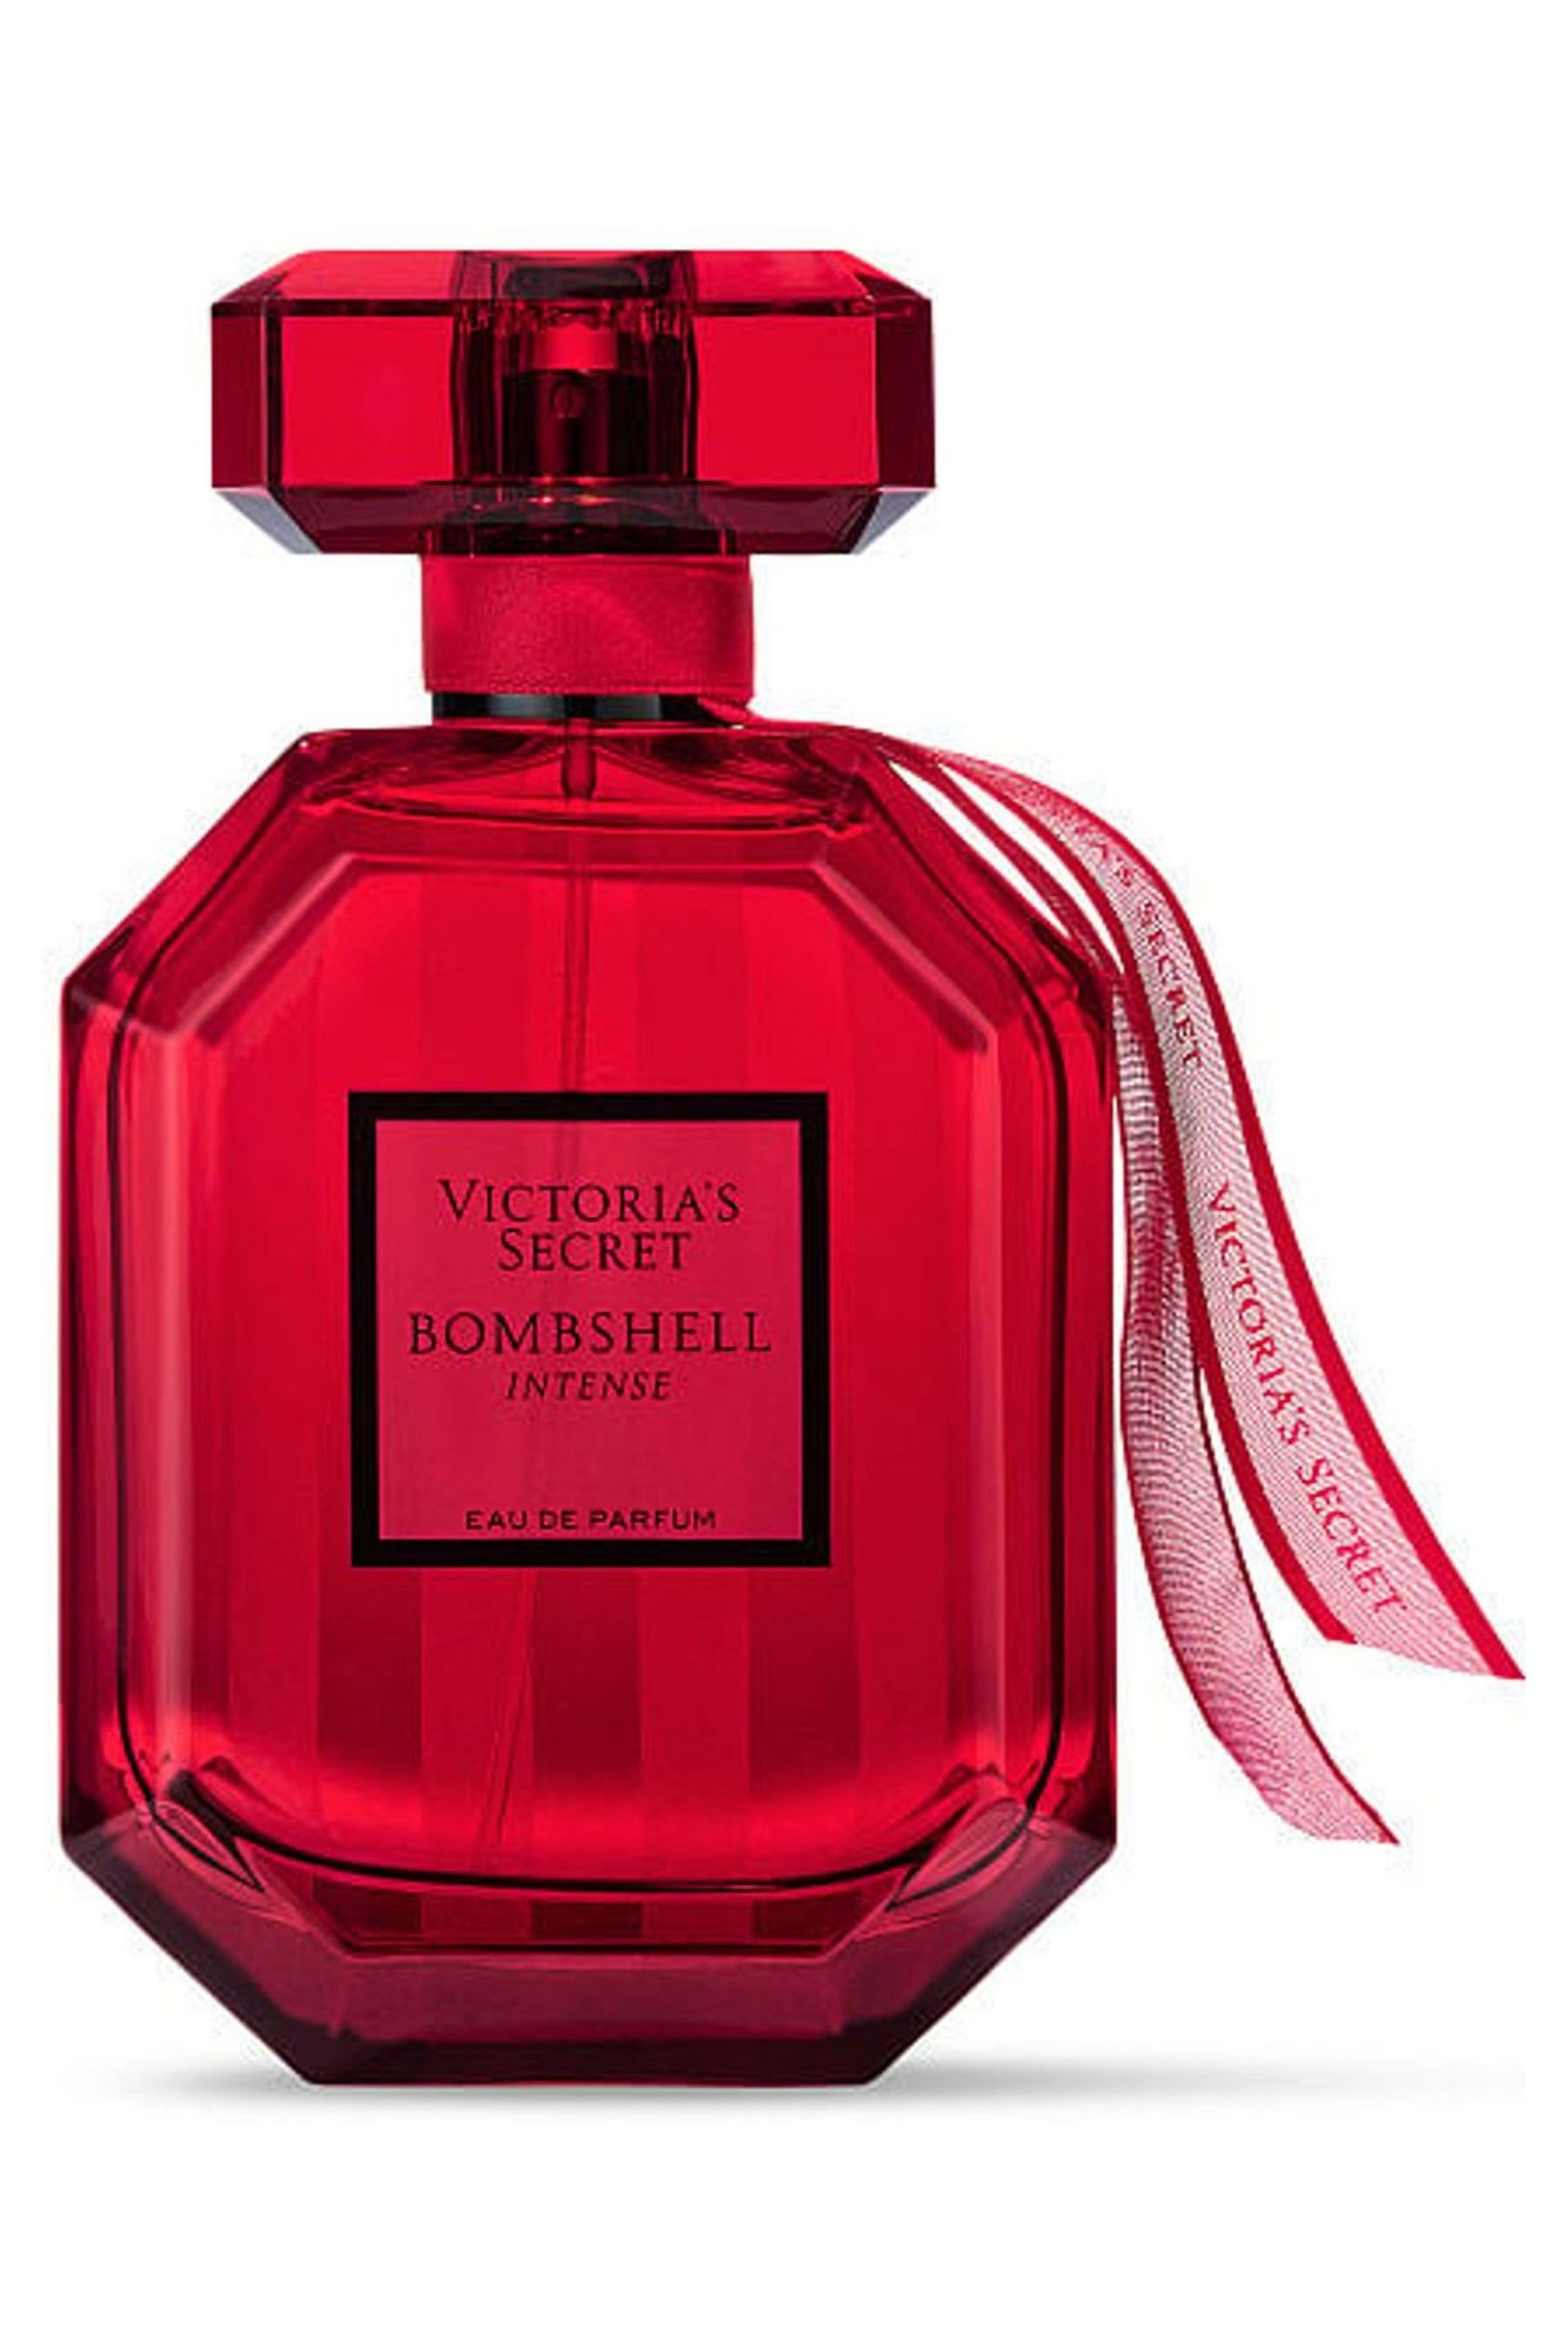 Buy Victoria's Secret Eau de Parfum from the Victoria's Secret UK ...